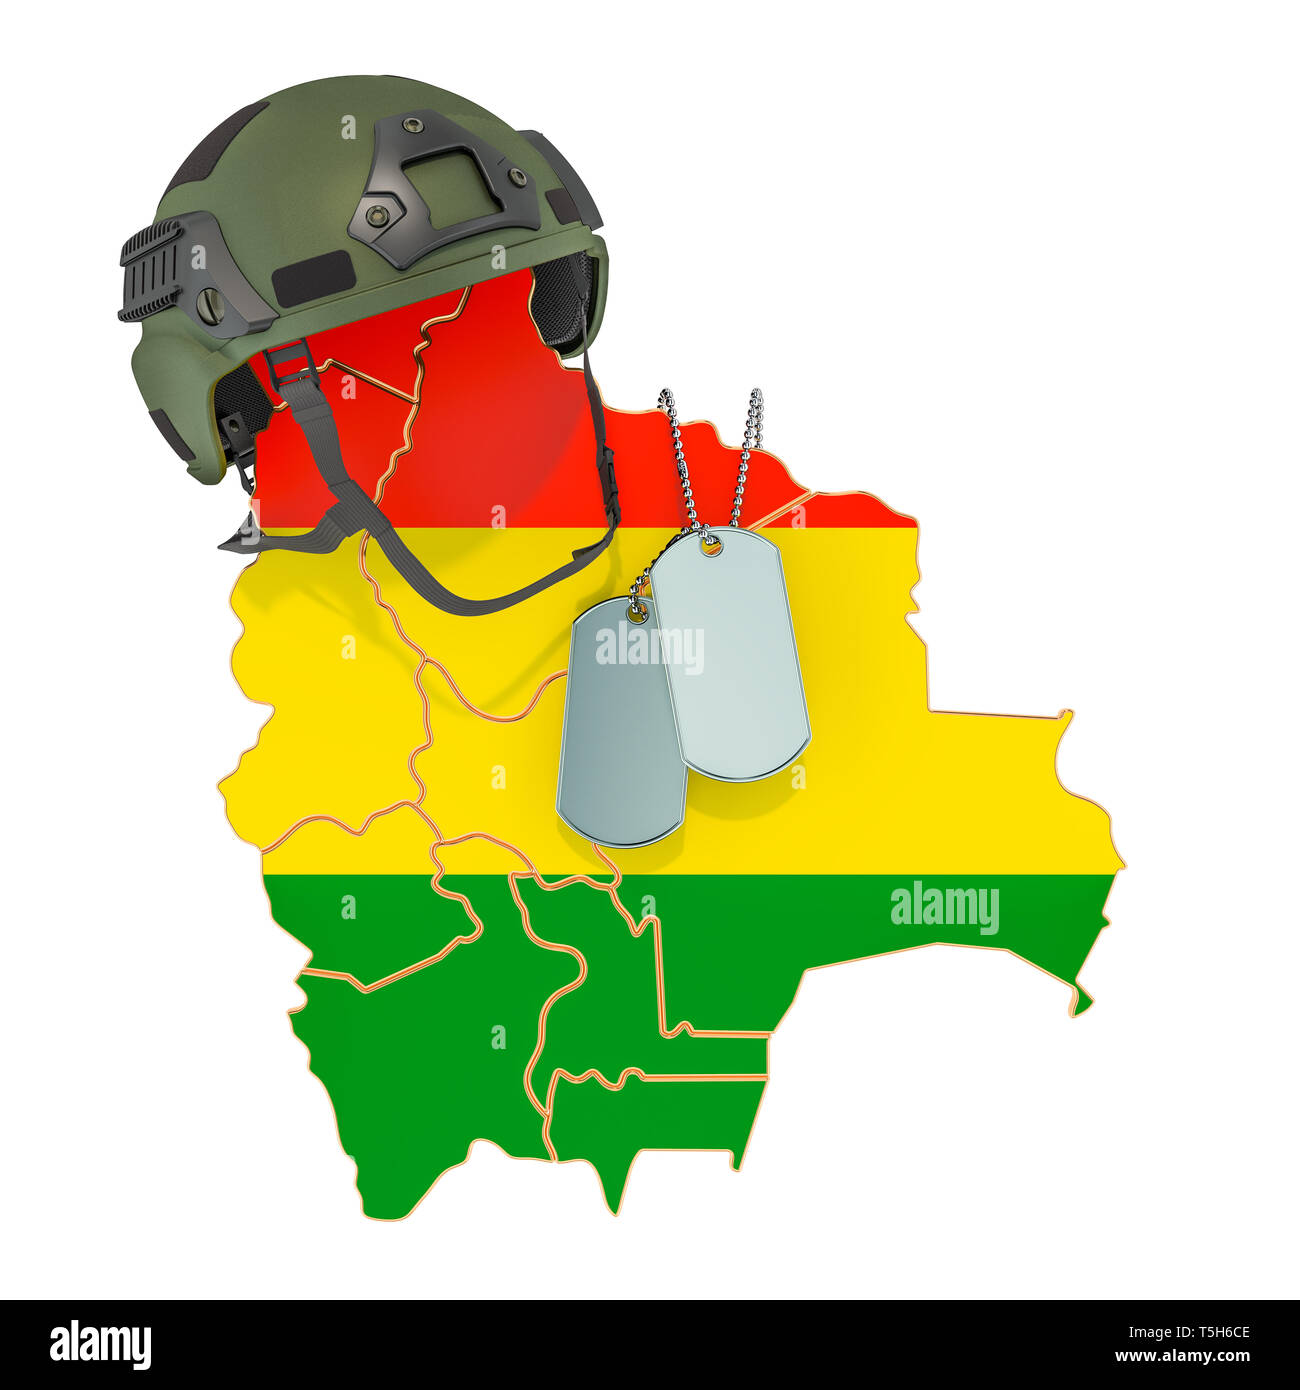 Bolivianischen Militär, Armee oder Krieg Konzept. 3D-Rendering auf weißem Hintergrund Stockfoto